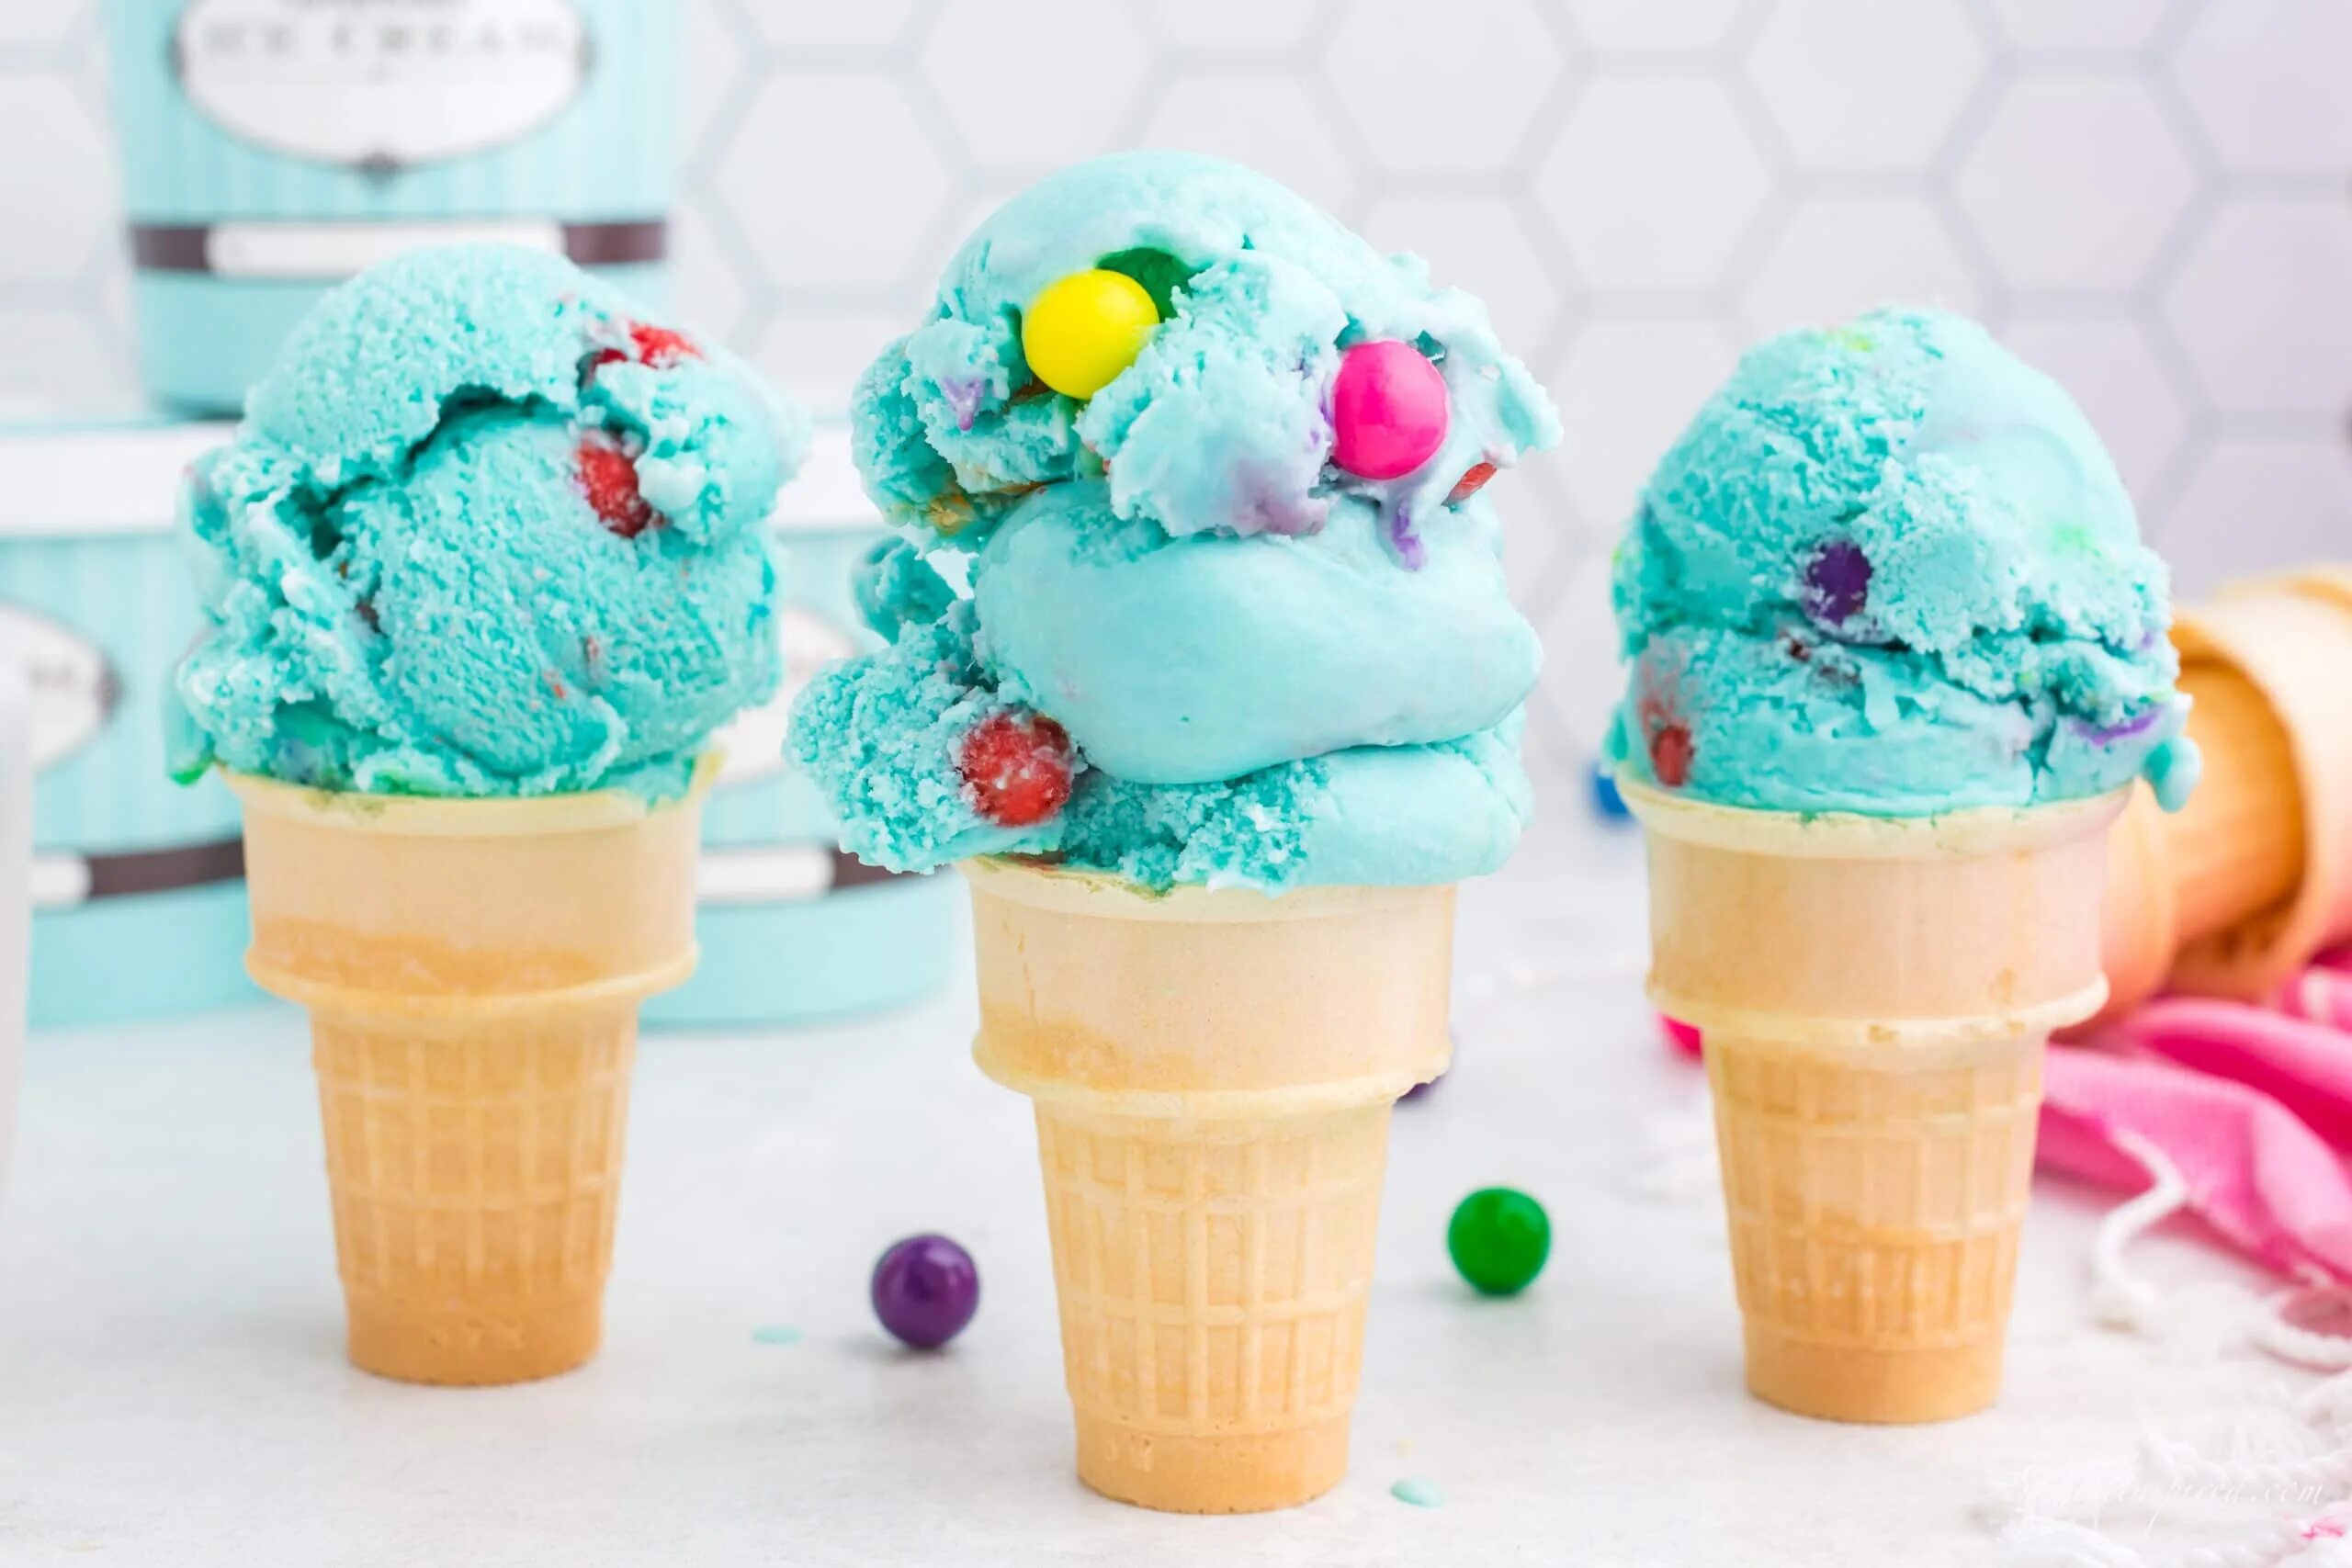 Мороженое с жвачкой. Бабблгам мороженое. Мороженое Бубль ГУМ голубое. Айс Крим мороженщик. Бабл ГУМ мороженое.